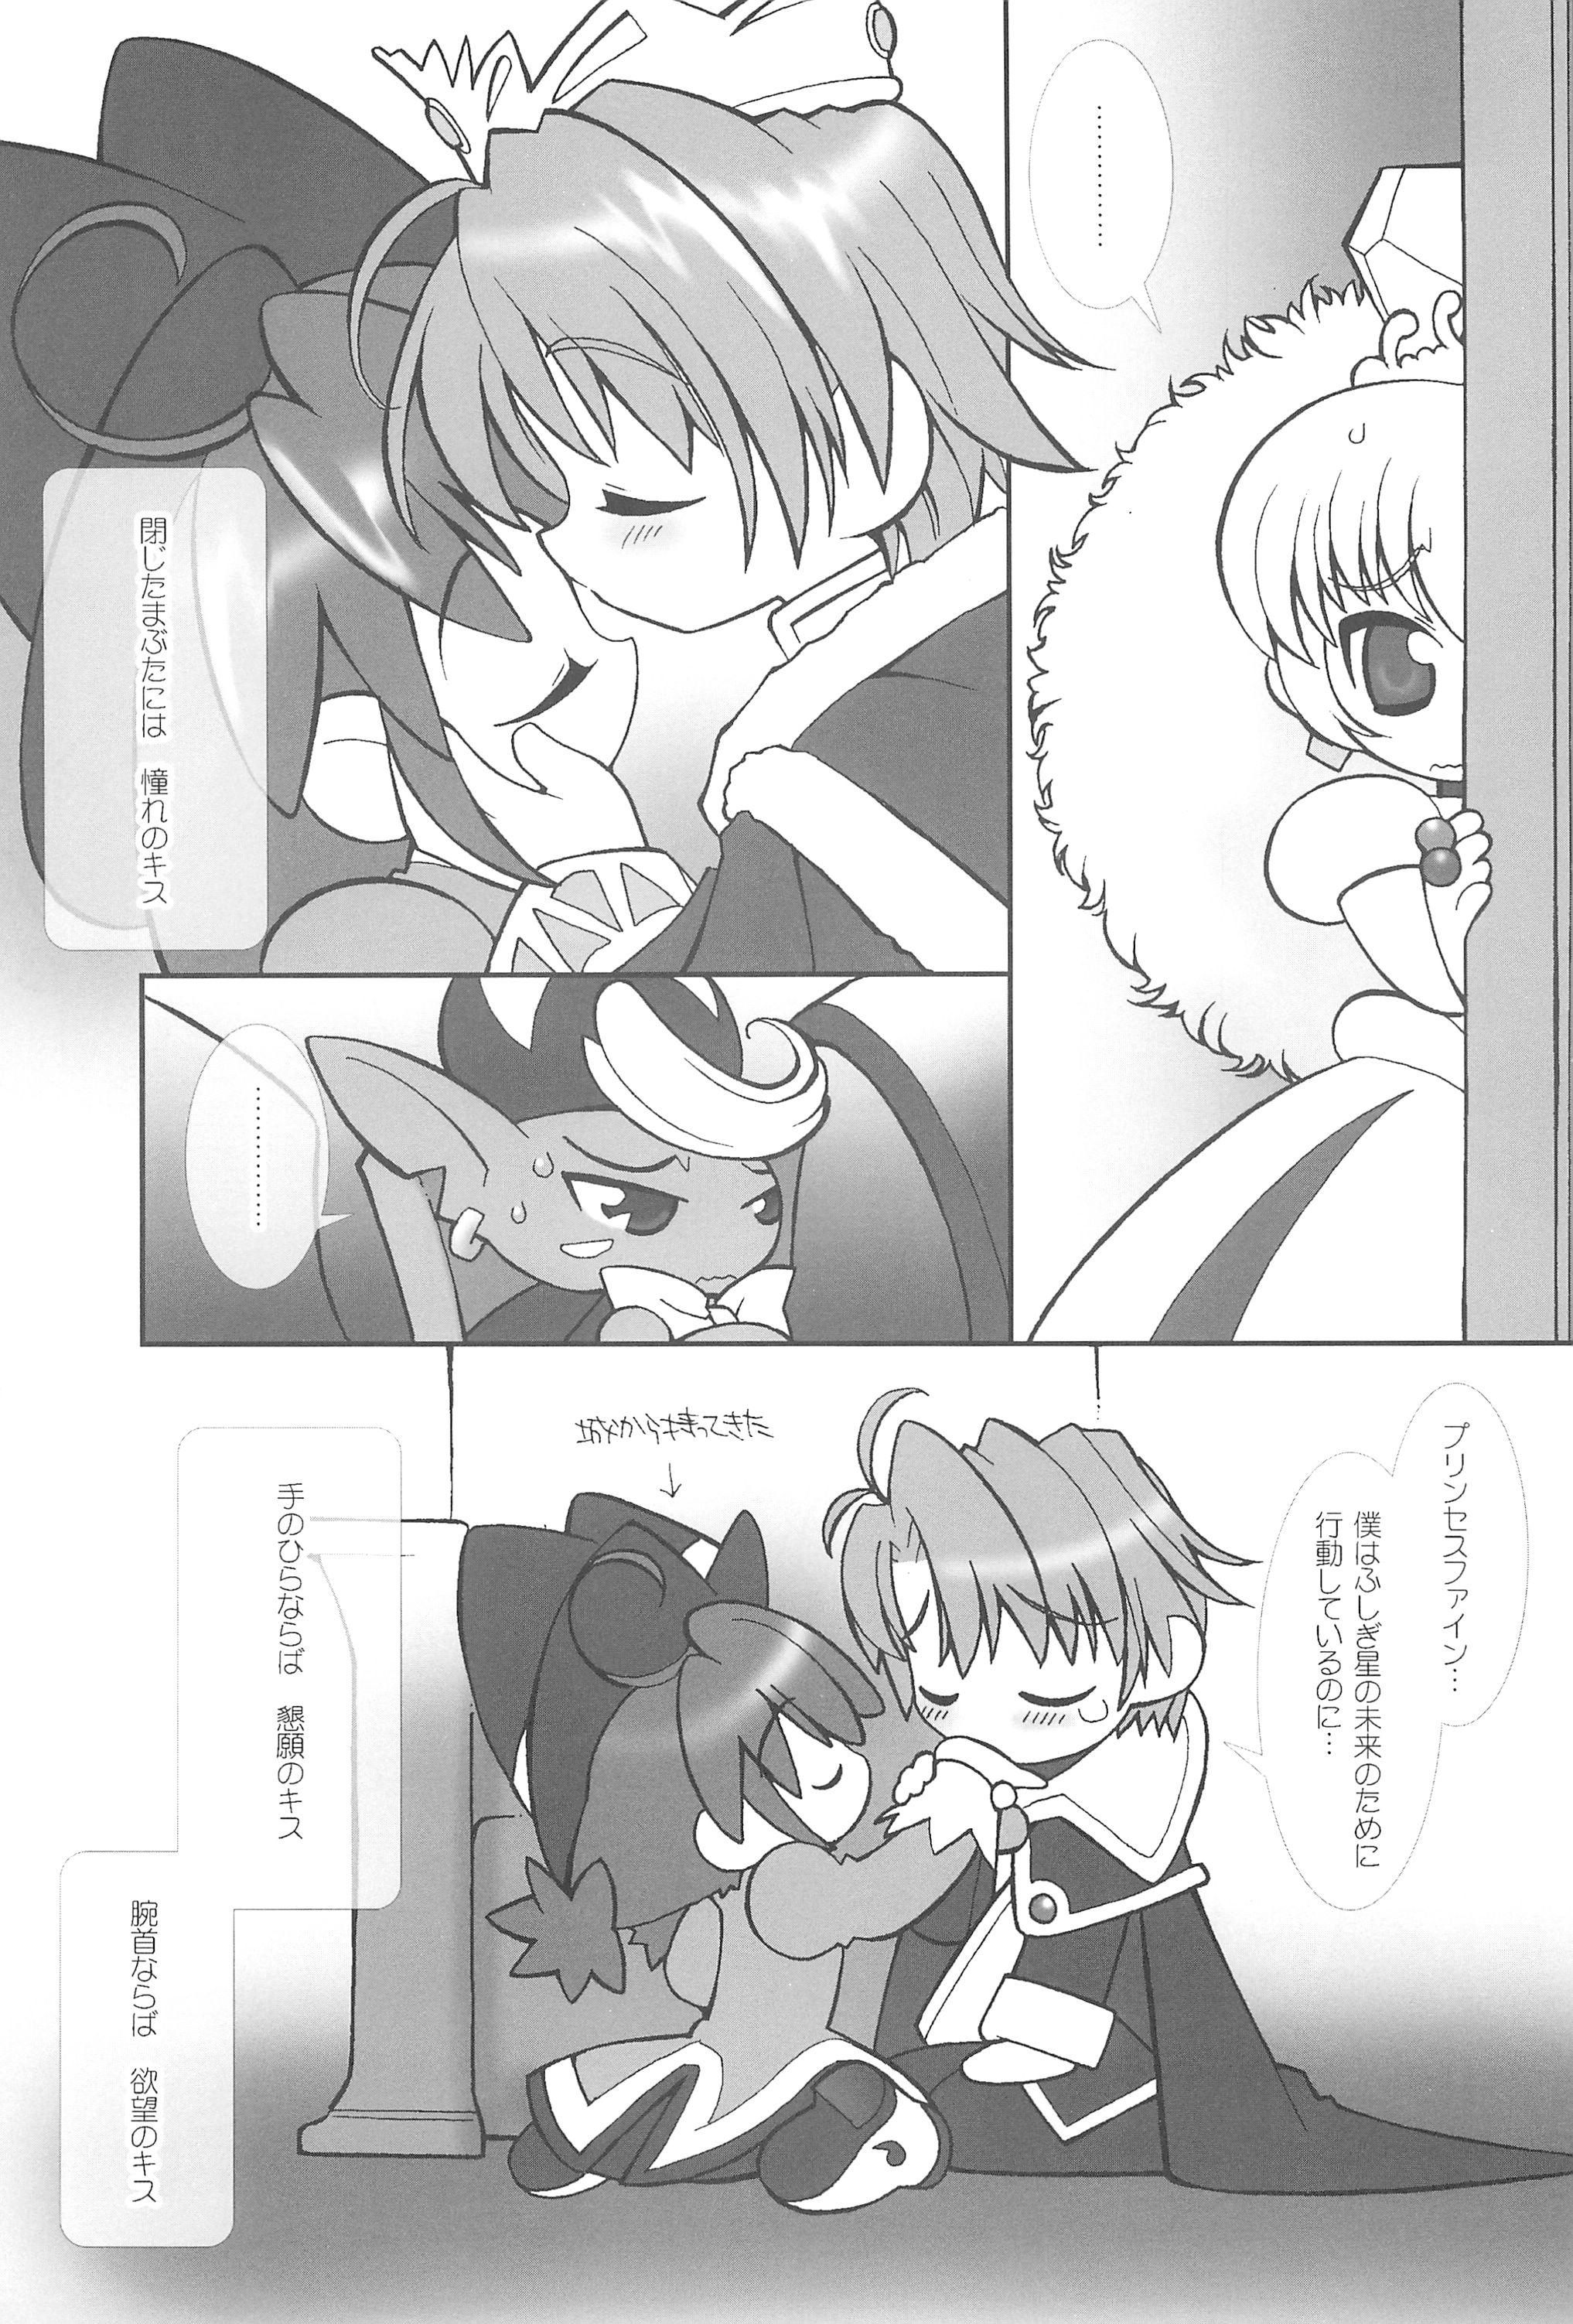 Monster Dick Tsuki no Ura de Aimashou #6 - Let's go to the Darkside of the Moon #6 - Fushigiboshi no futagohime Stepmom - Page 7